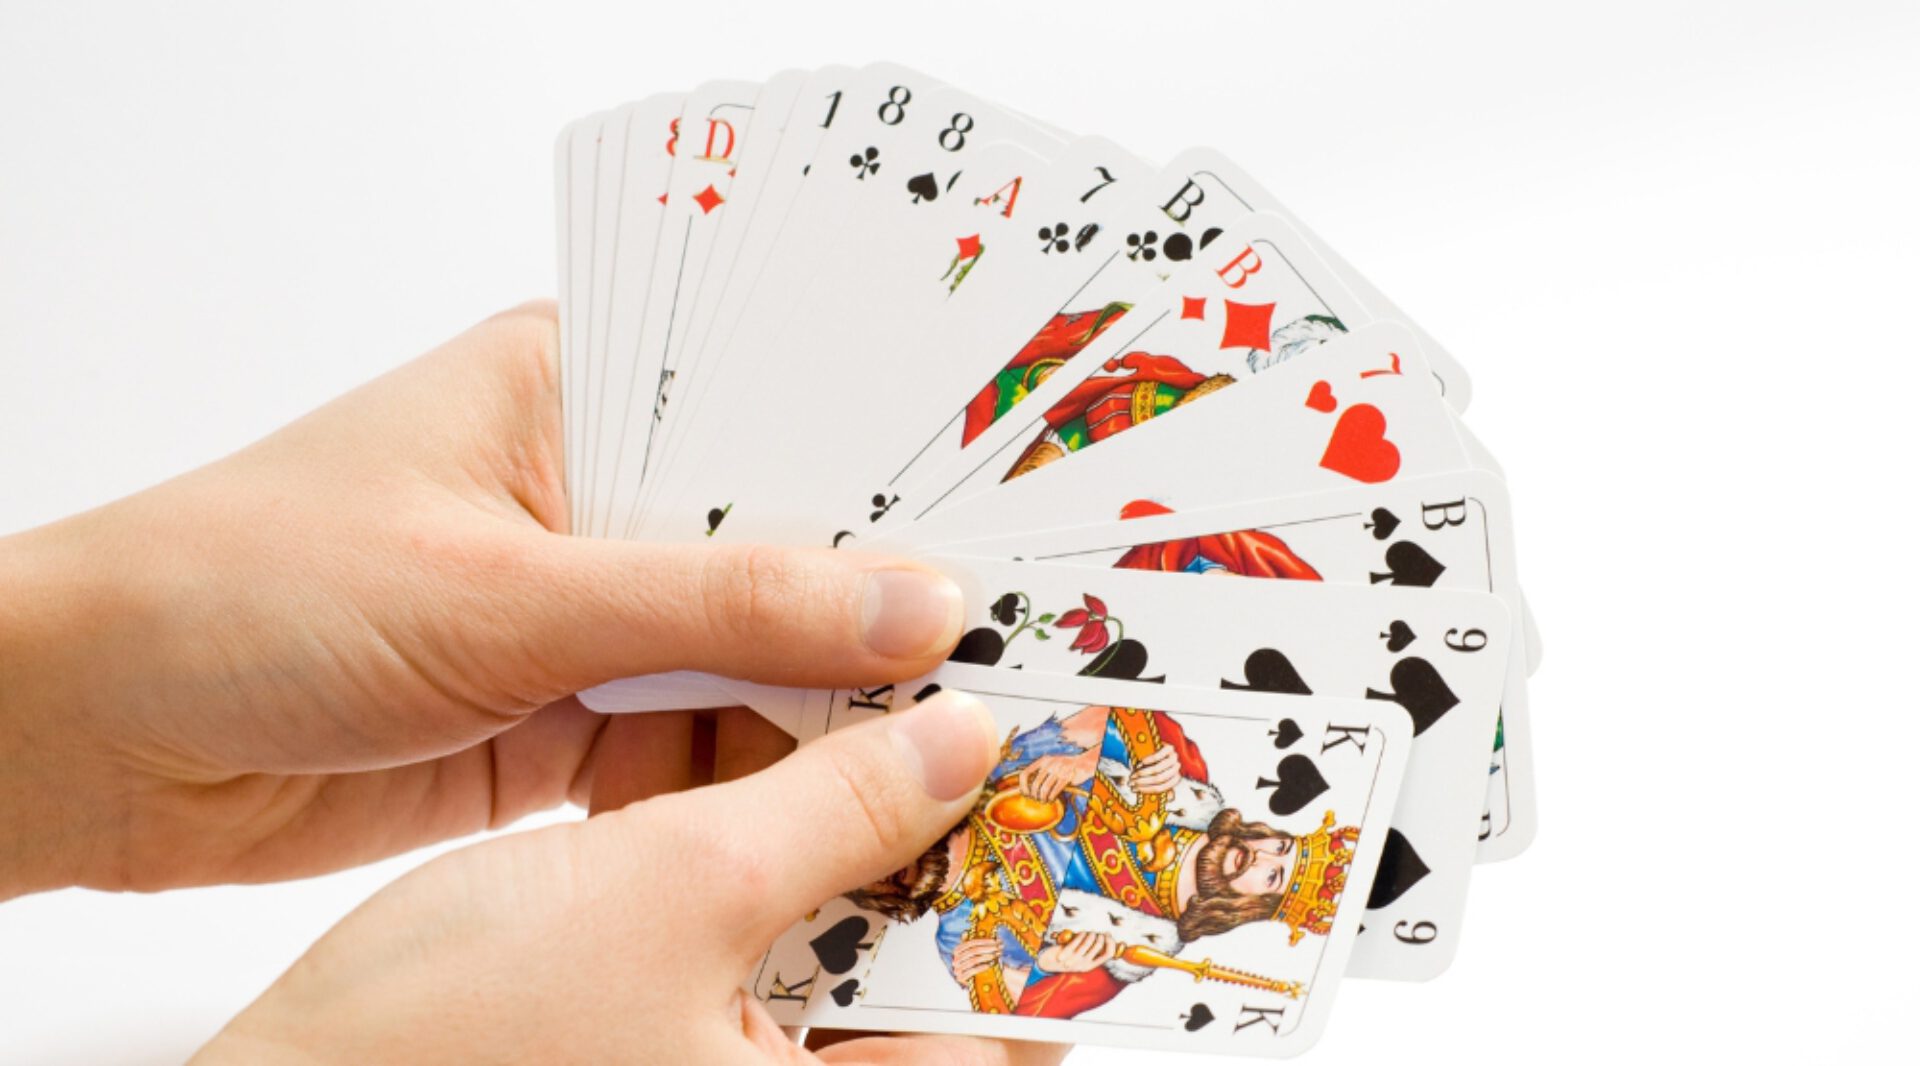 Kaartleggen met gewone speelkaarten  • deel 1  •  de betekenis van de kaarten